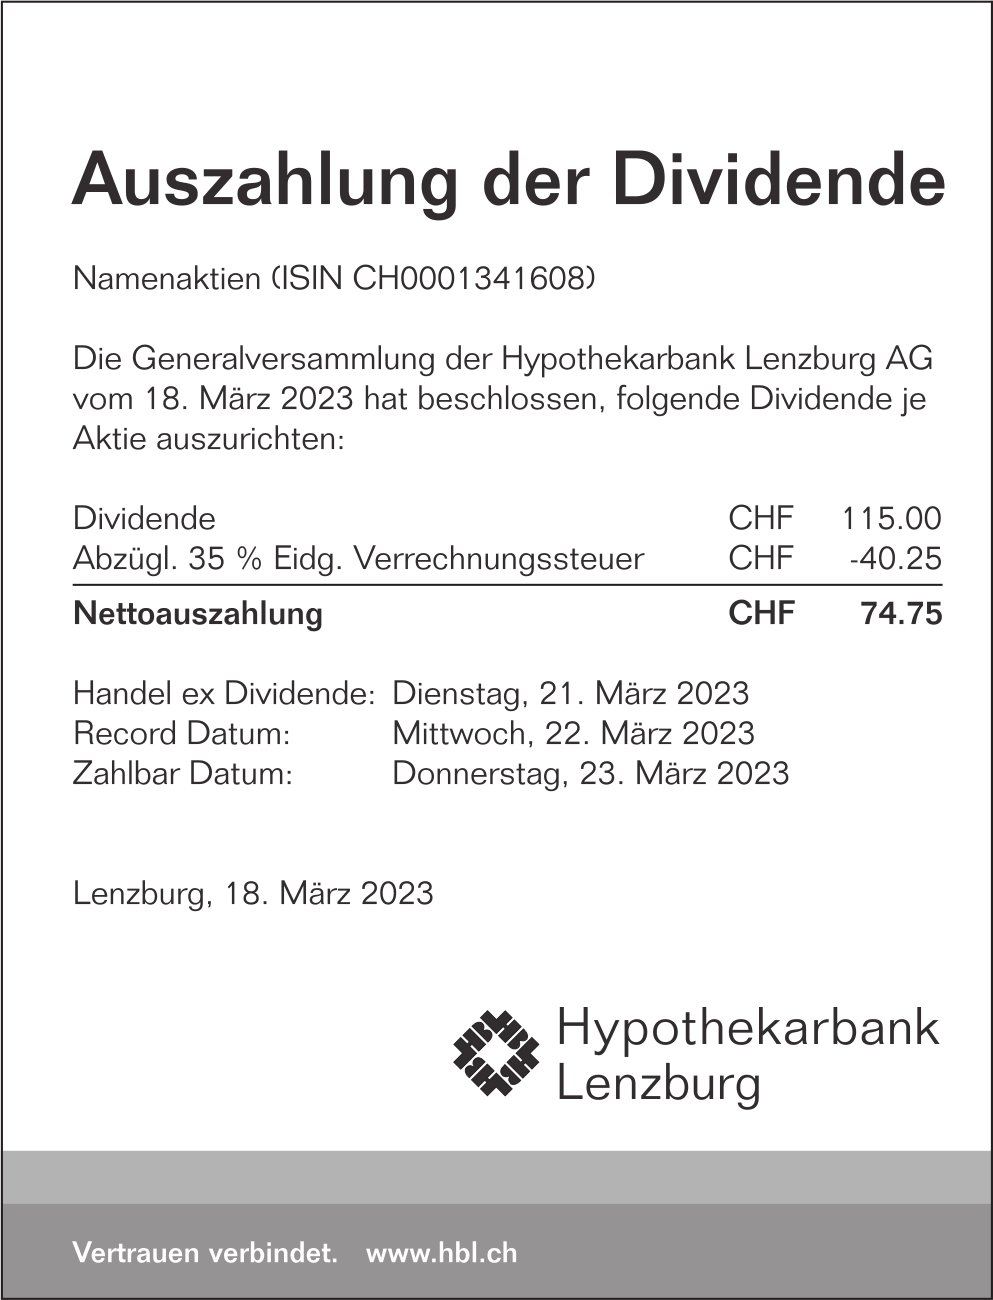 Hypothekarbank Lenzburg, Auszahlung der Dividende